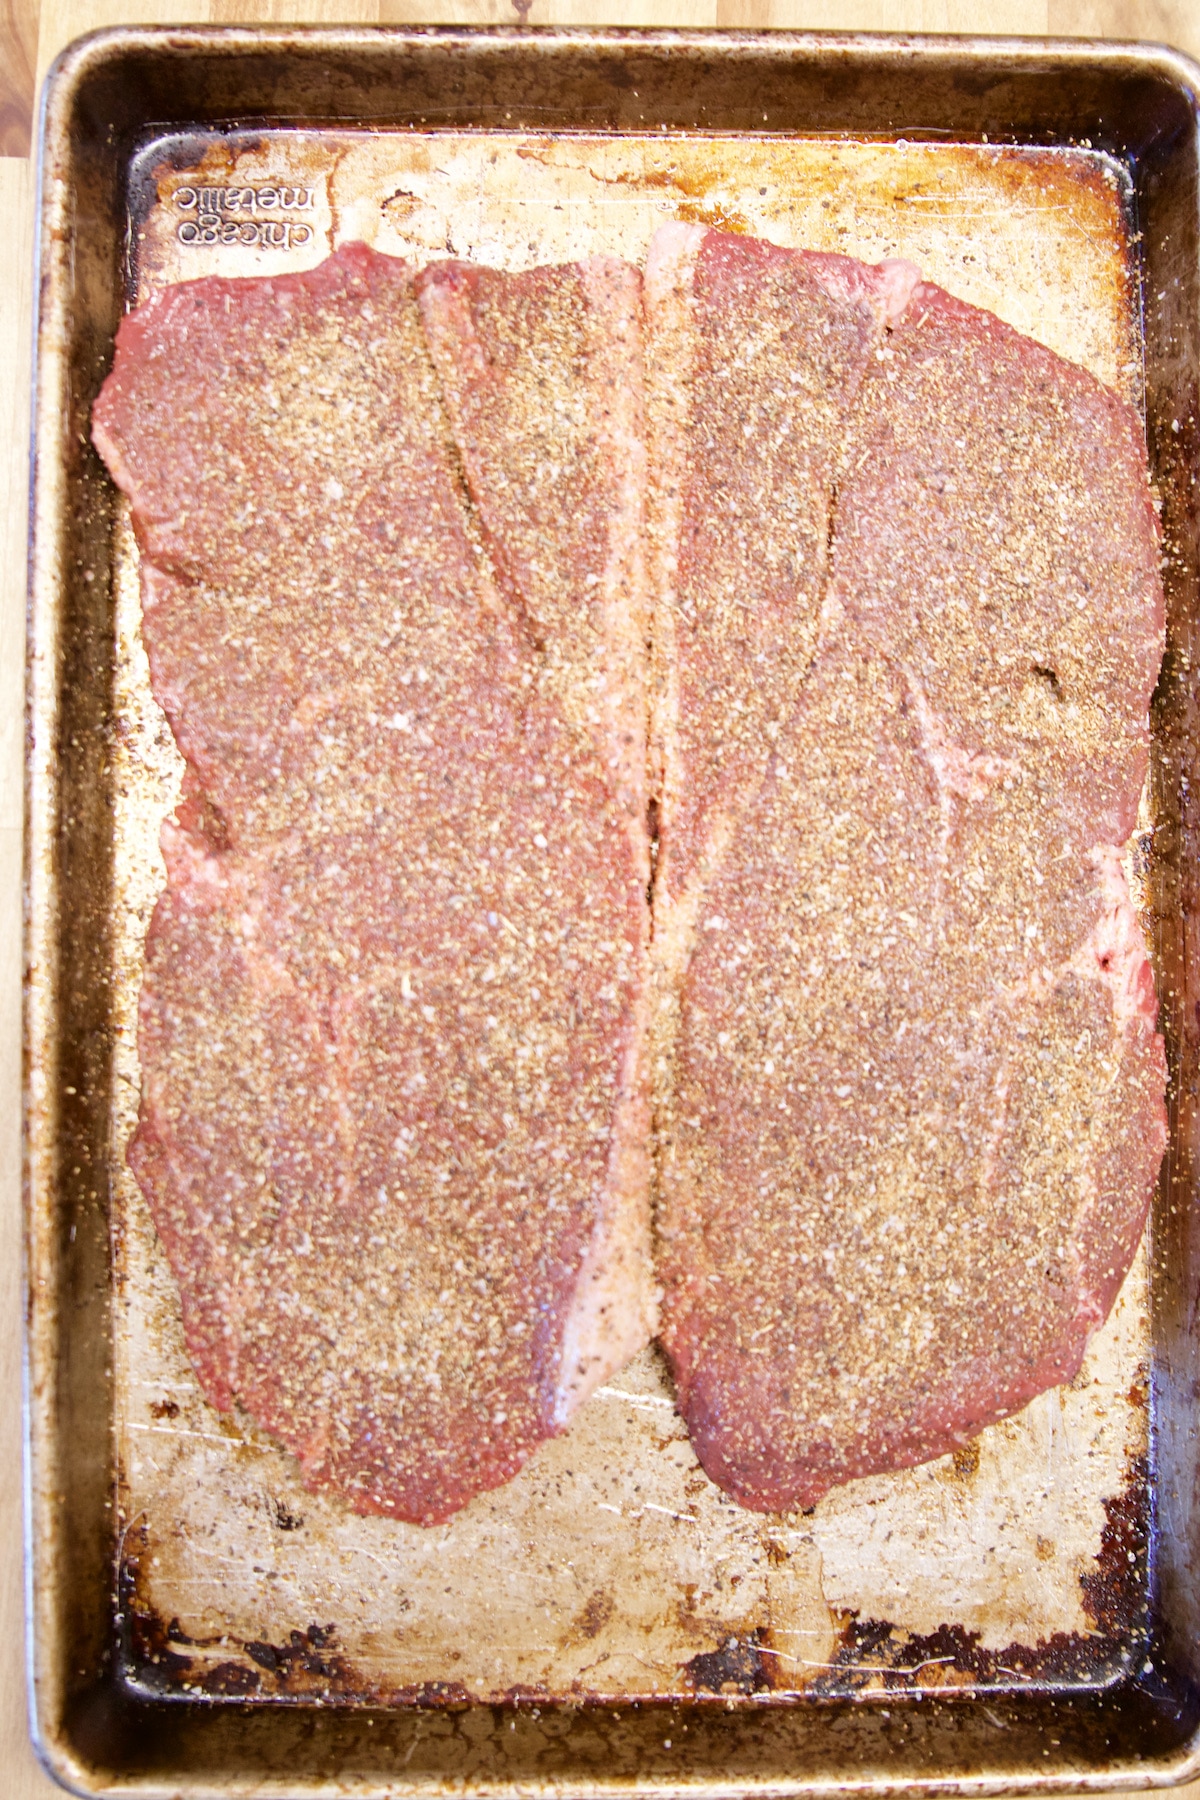 2 Sirloin steaks coated in steak rub.